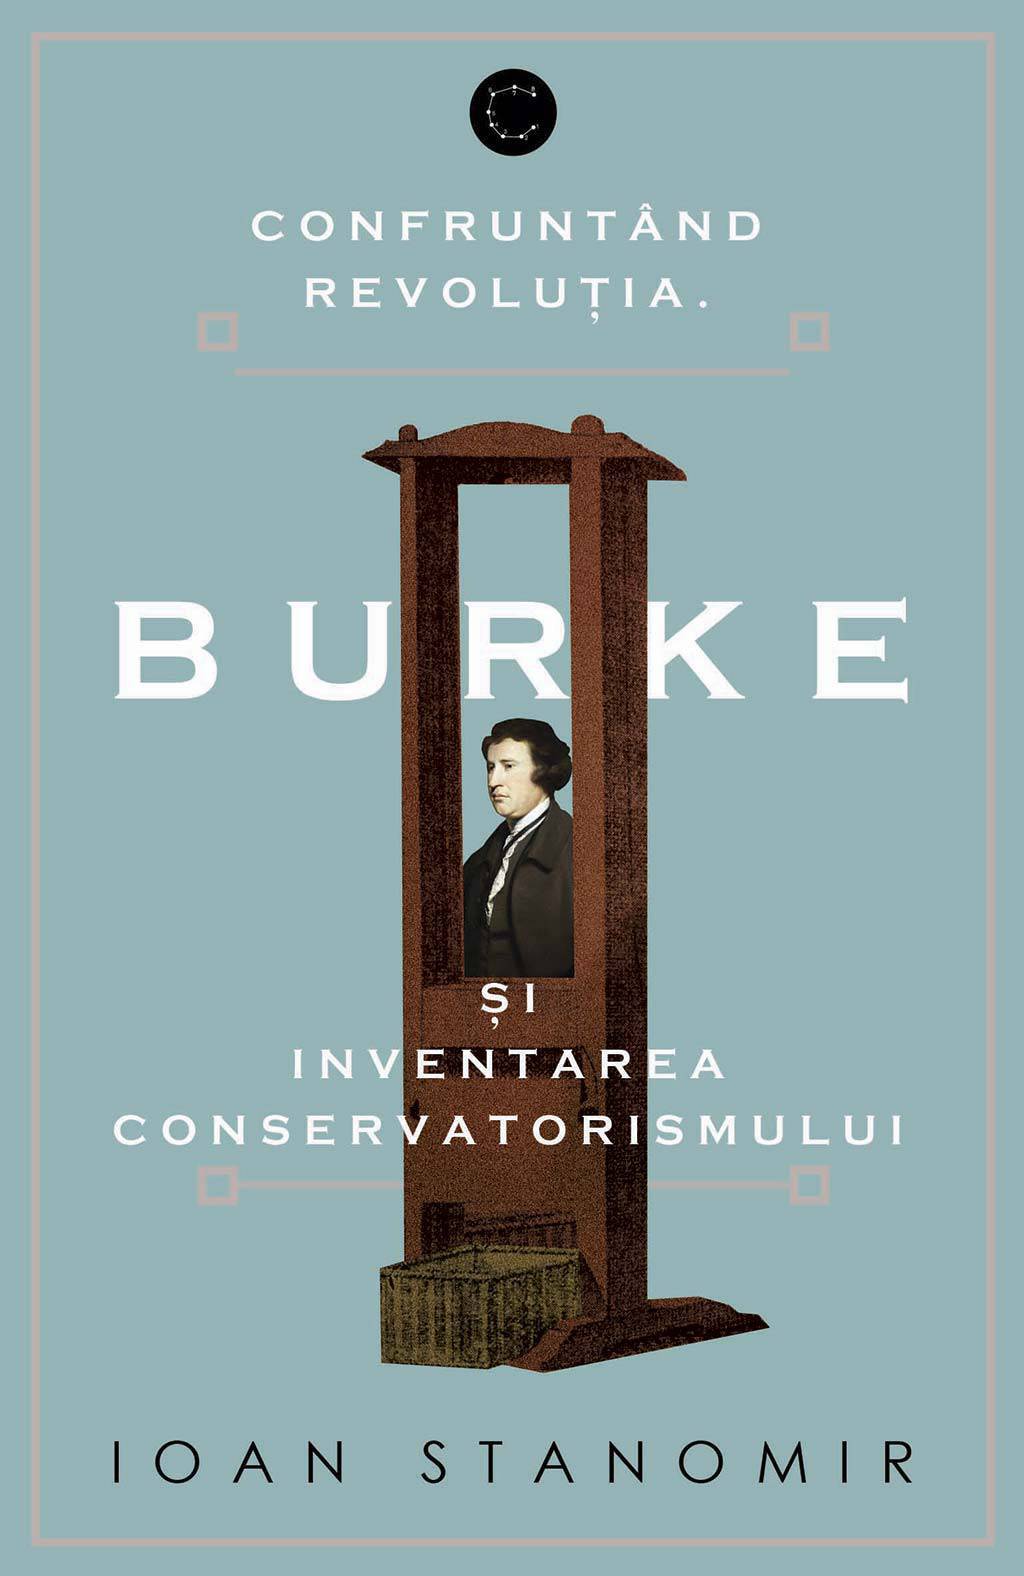 Confruntand revolutia. Burke si inventarea conservatorismului (ebook)